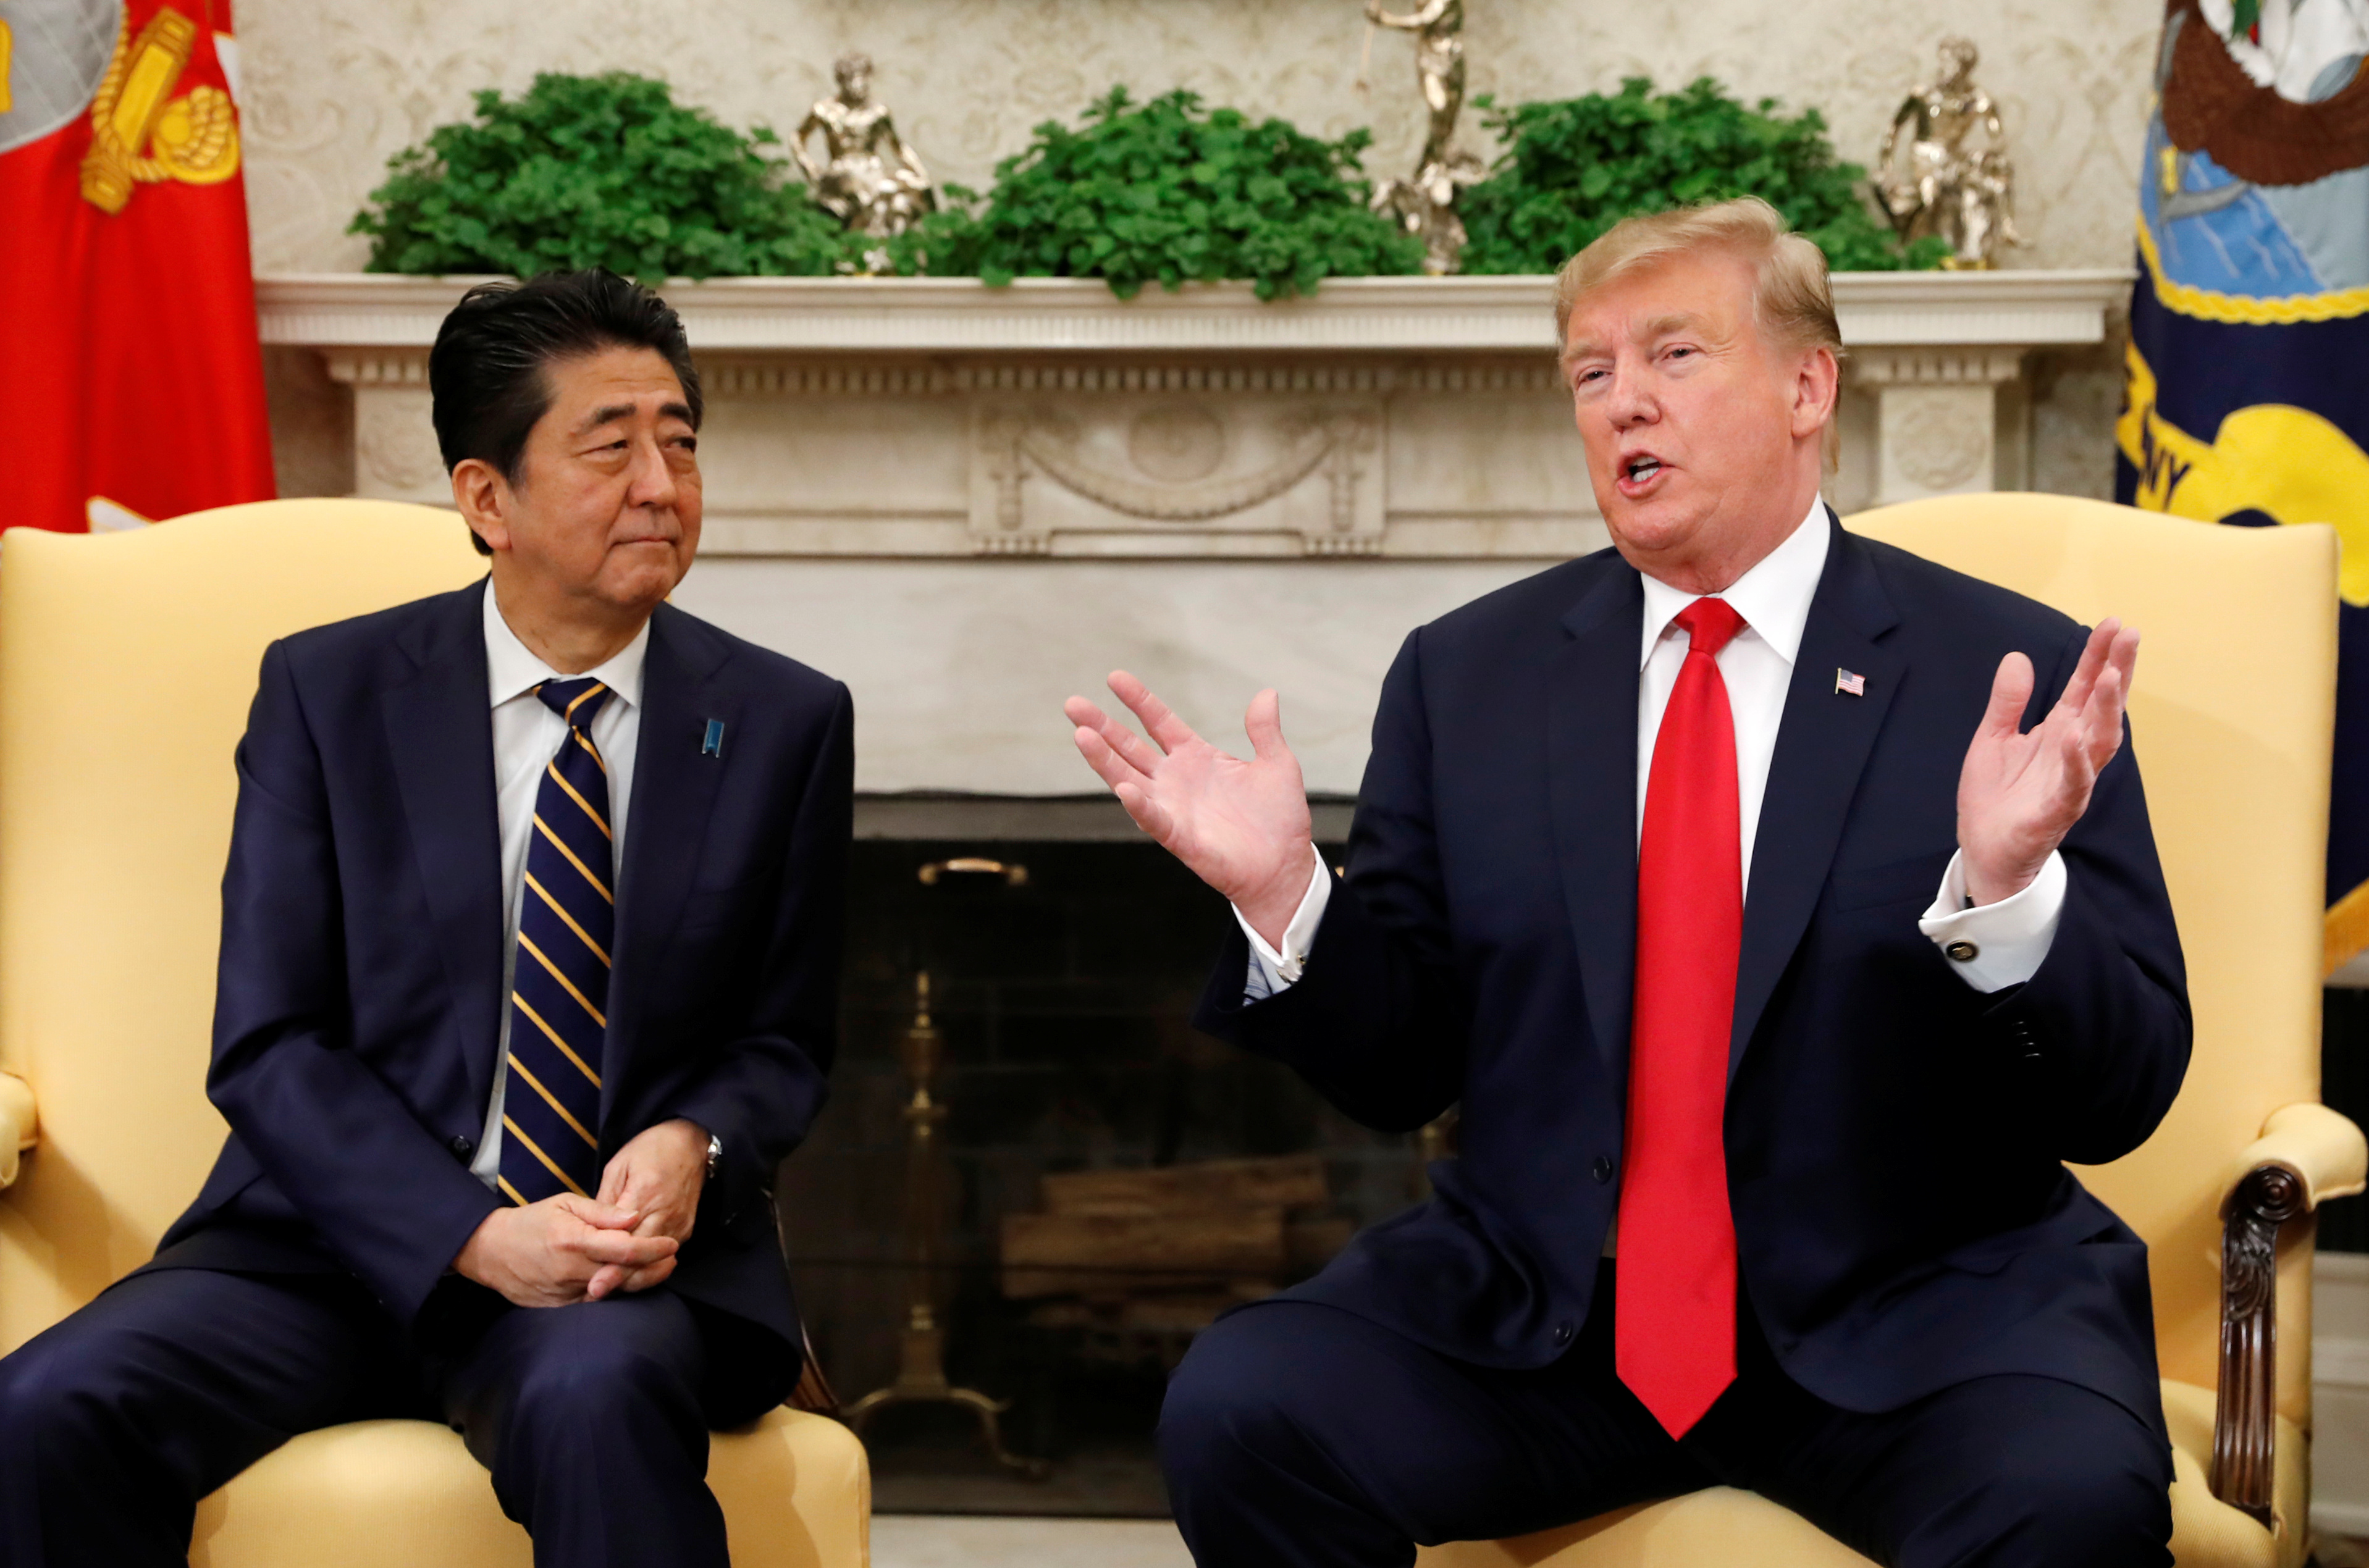 الرئيس الأمريكى ورئيس الوزراء اليابانى فى البيت الأبيض (1)